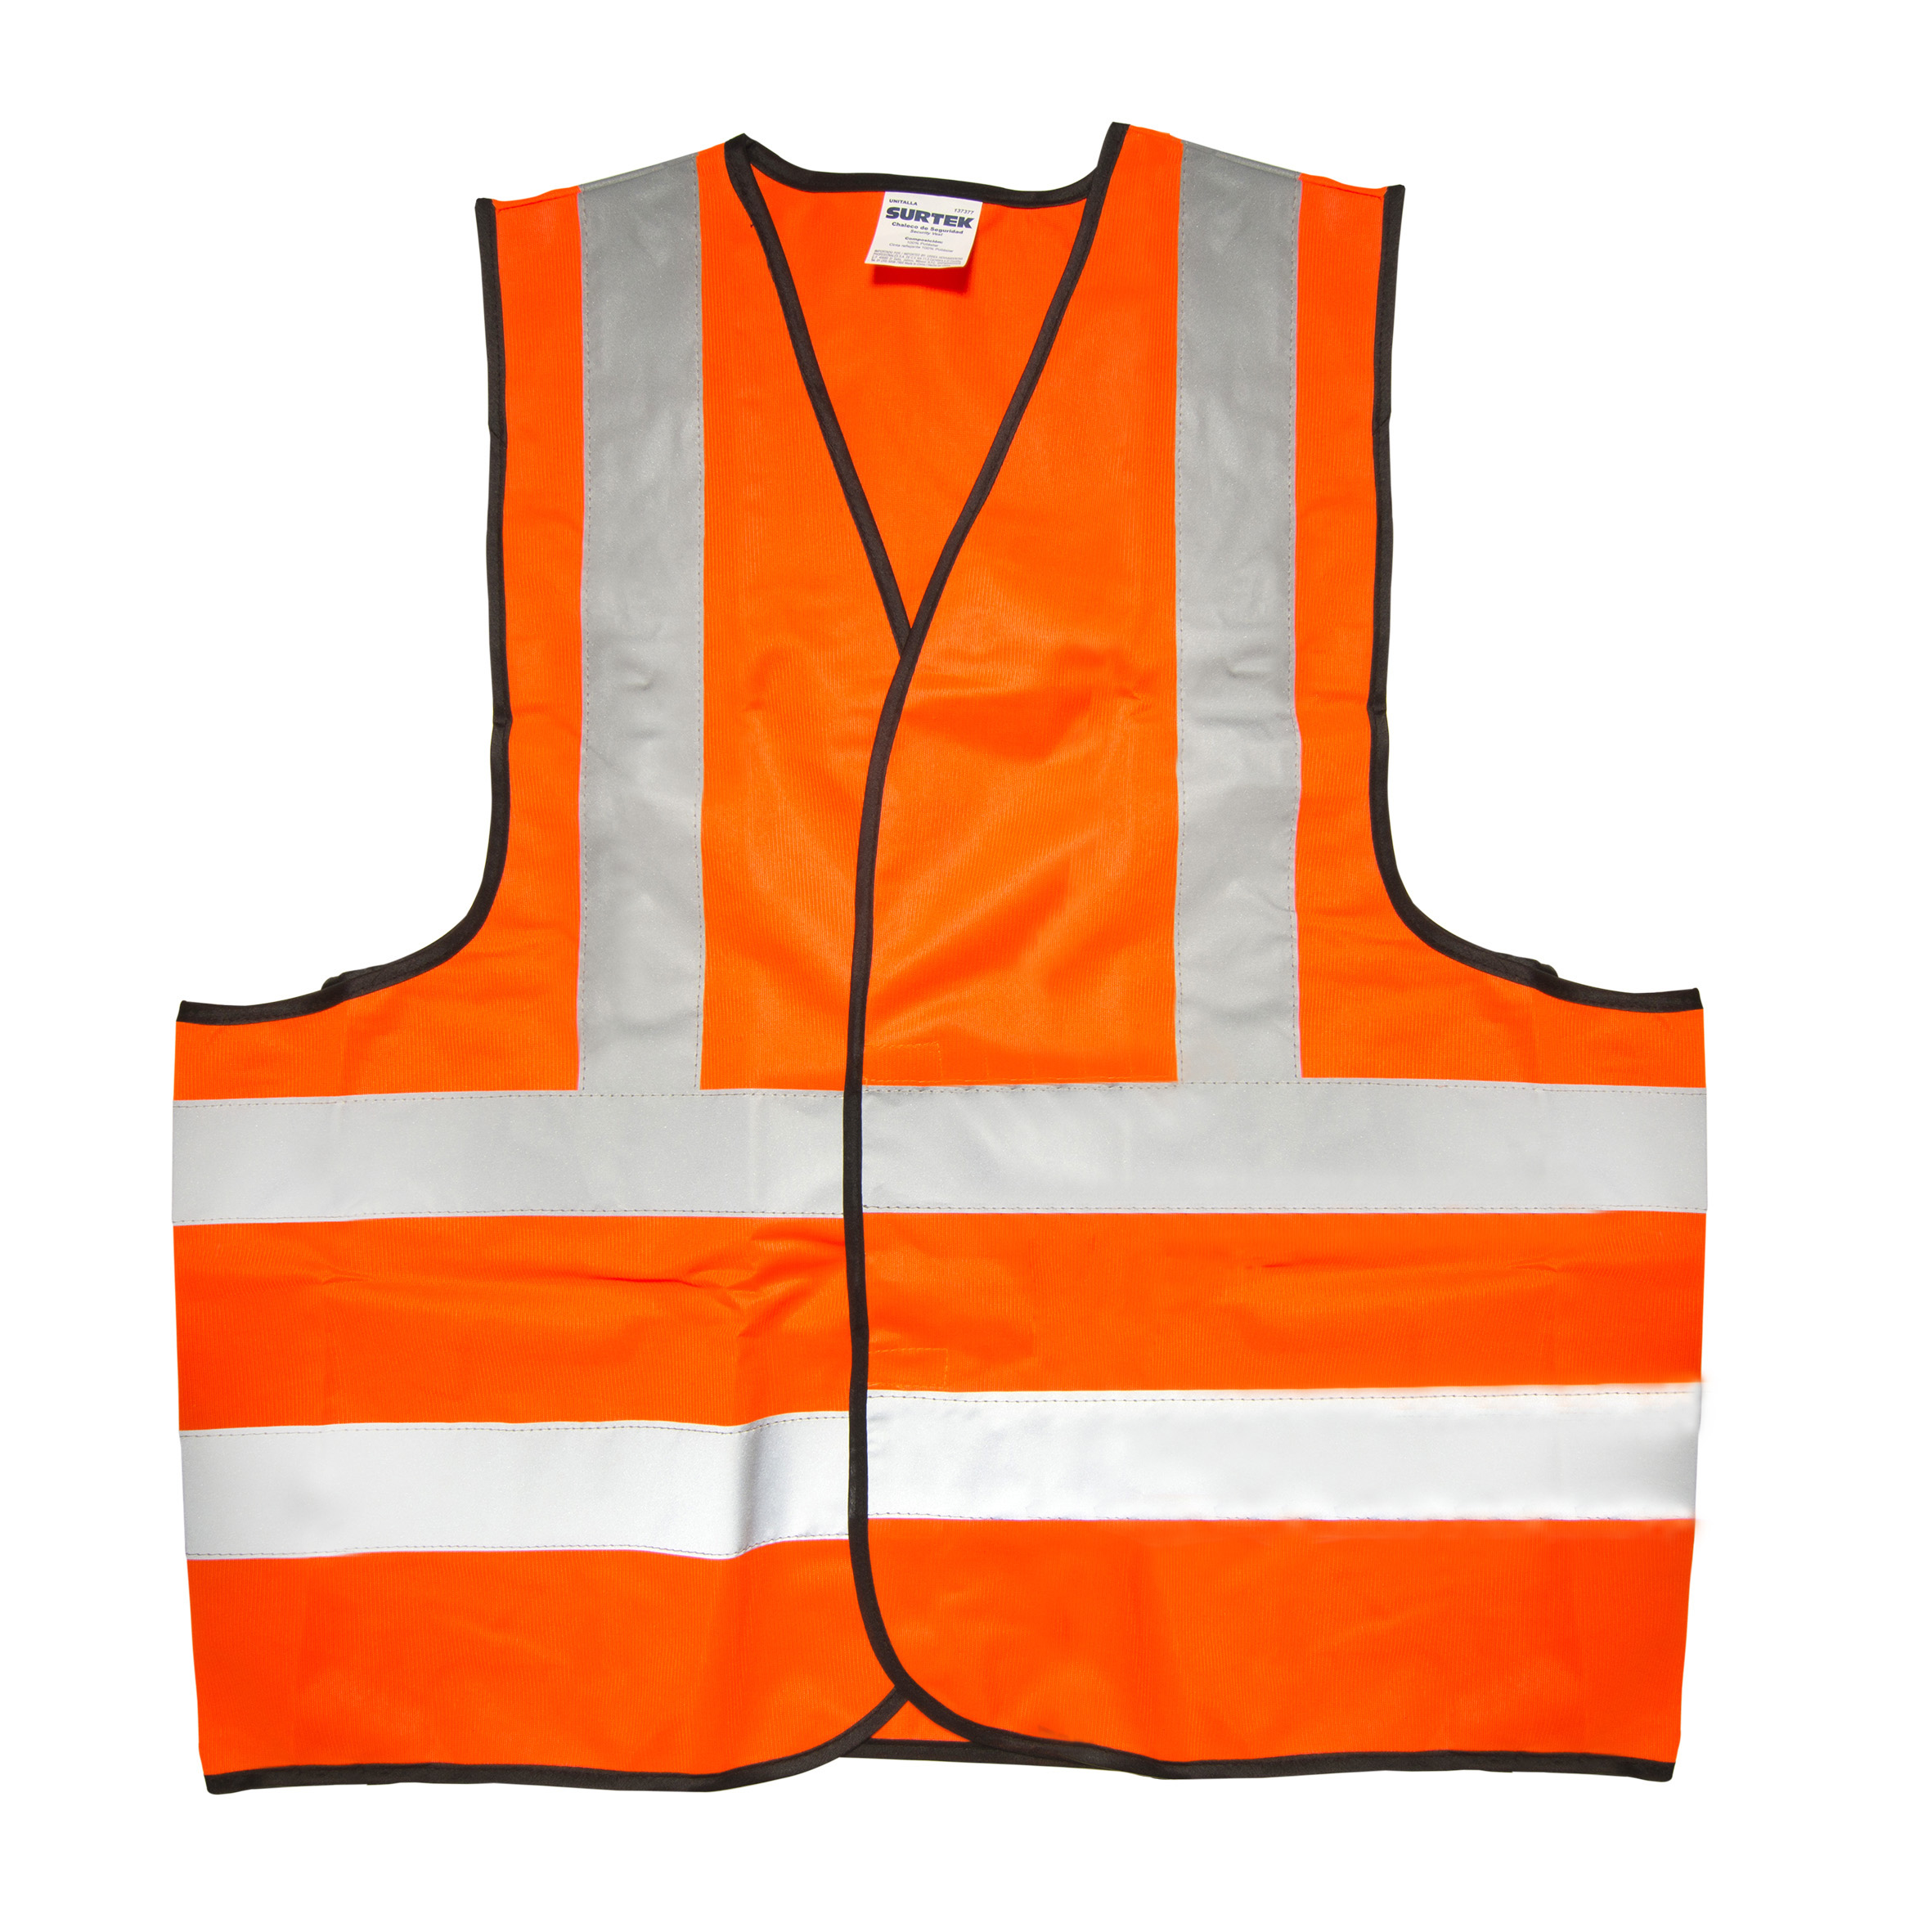 Chaleco de seguridad tela naranja con cintas reflejantes